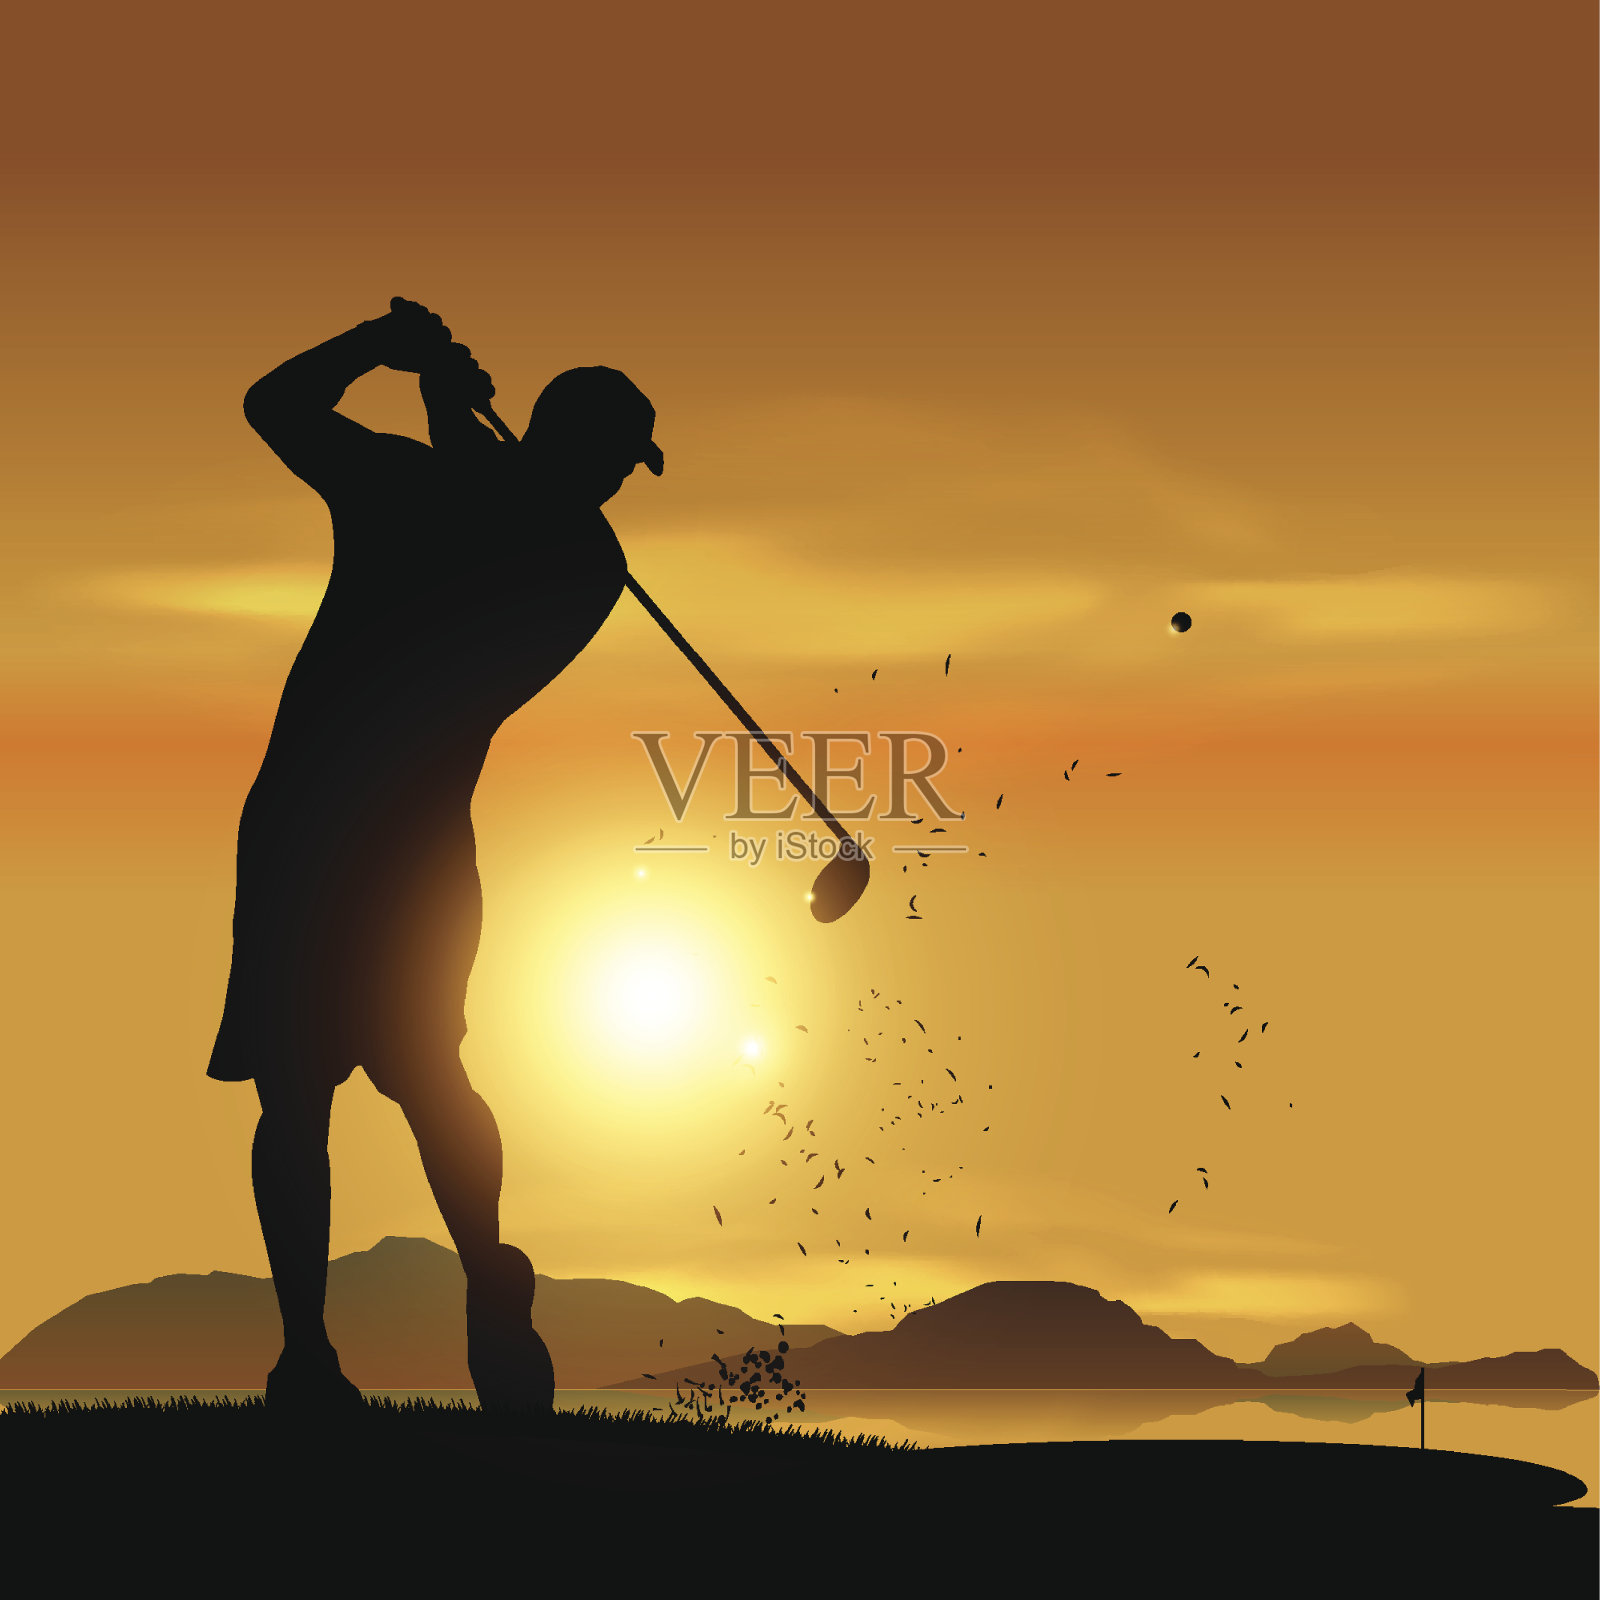 高尔夫球手在日落时的剪影插画图片素材